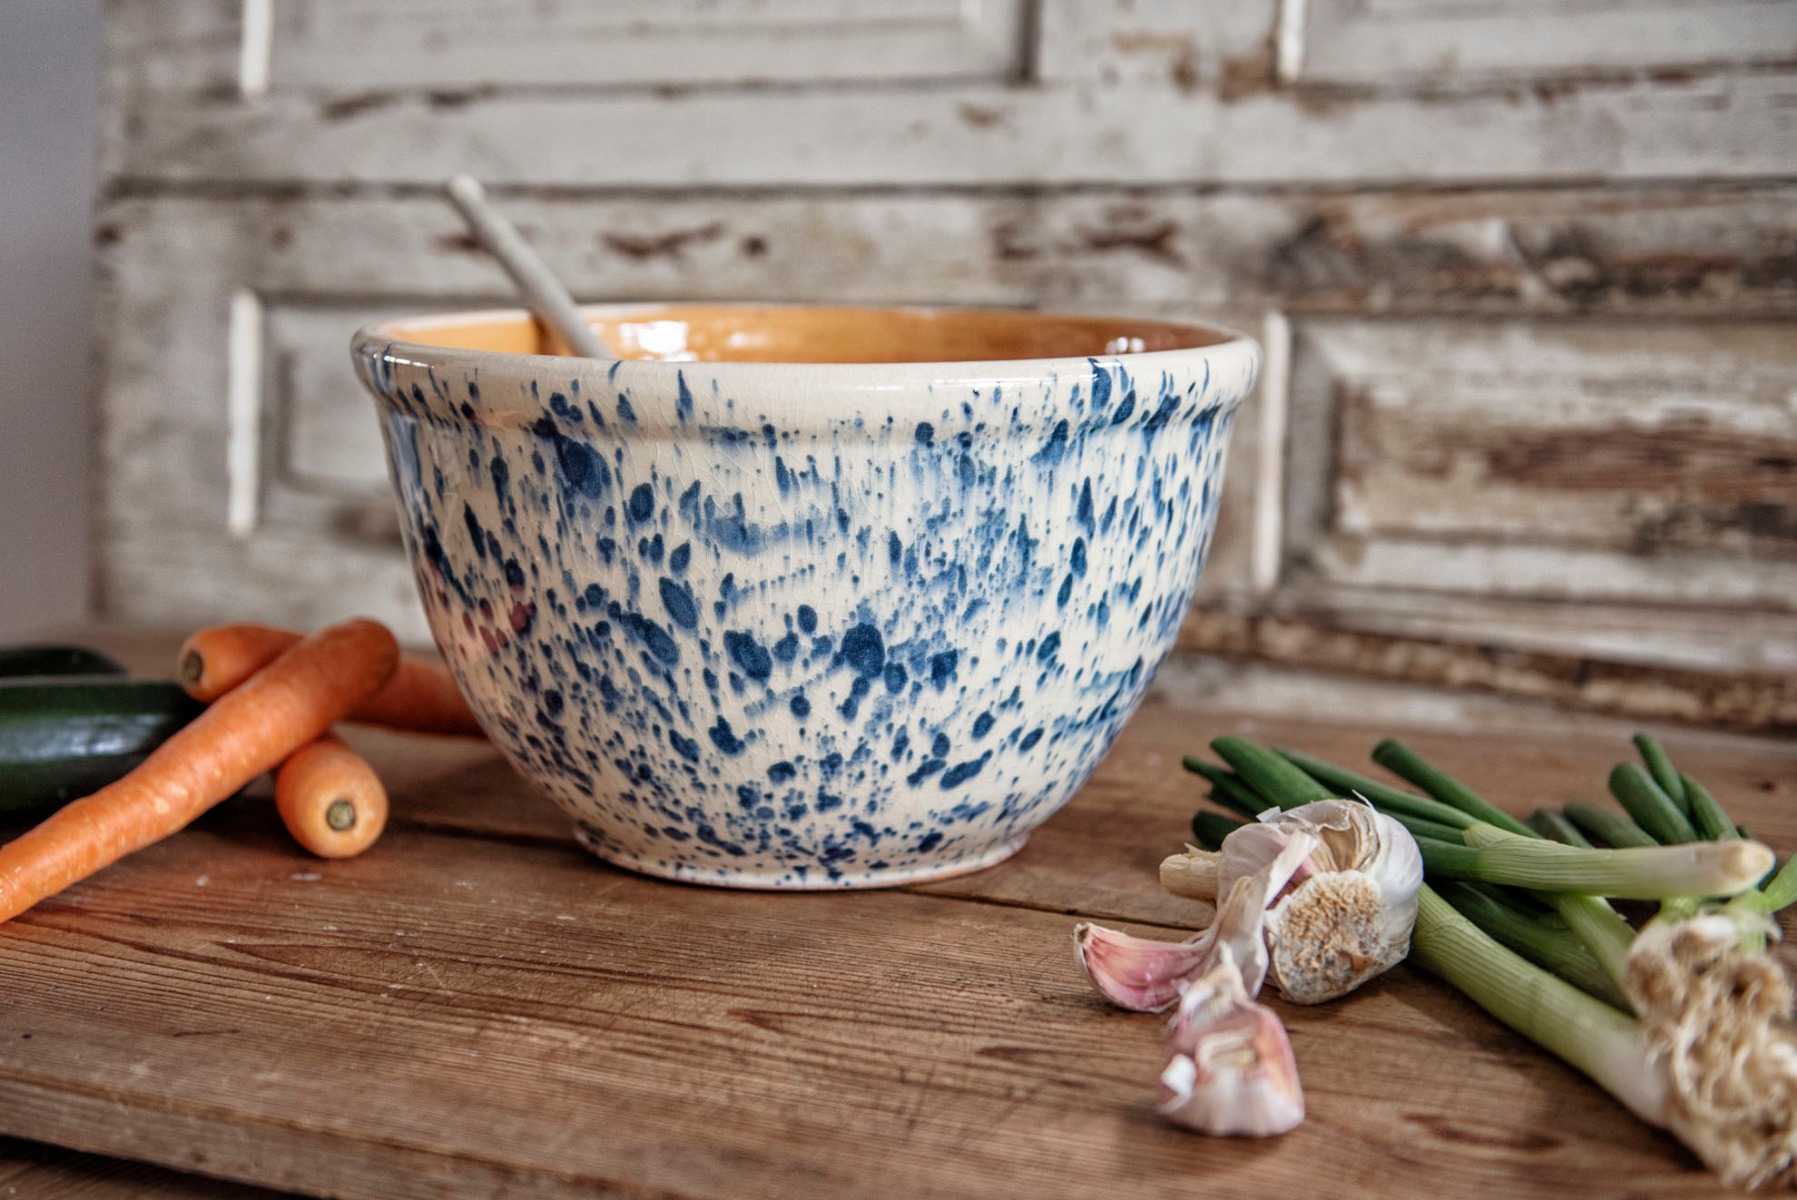 Unsere Elsässer Keramikschüsseln werden sorgfältig, in liebevoller Handarbeit hergestellt. Jedes Stück ist ein Unikat und ein Schmuckstück auf dem Tisch.